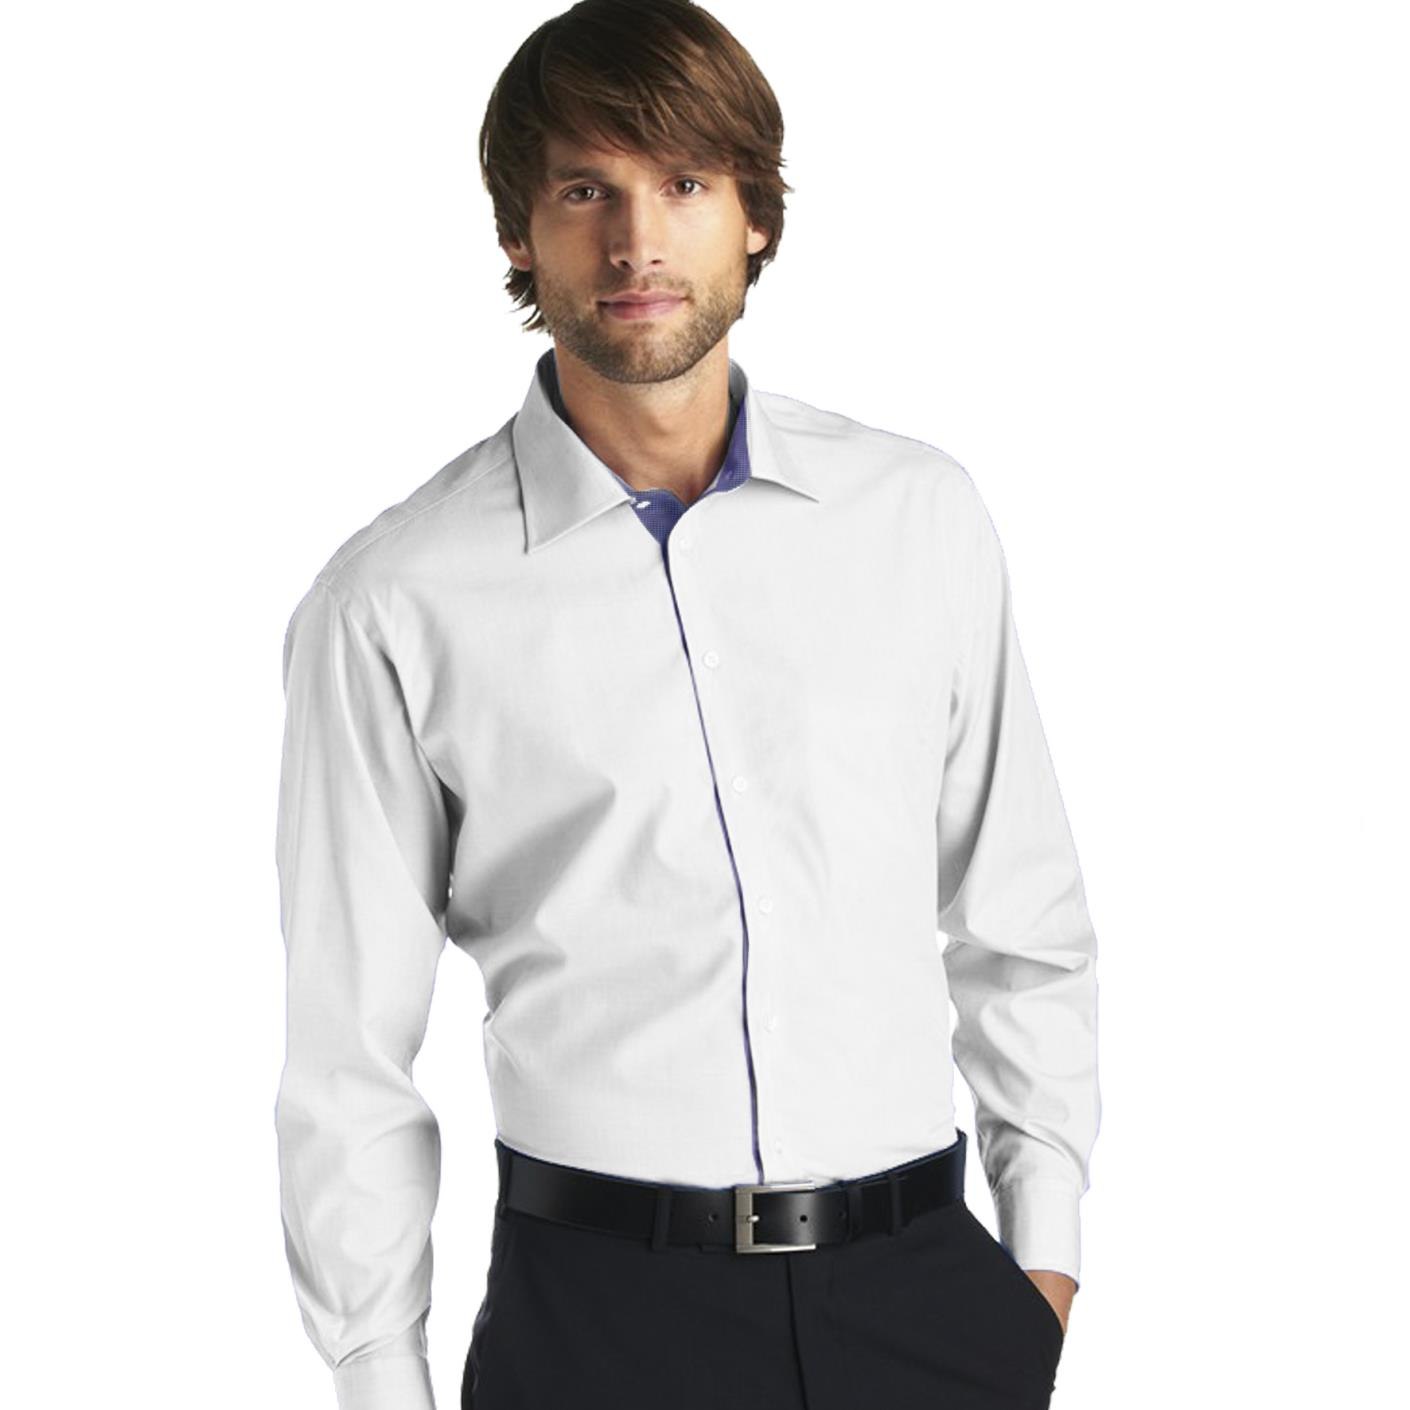 Недорогие мужские рубашки с длинным рукавом. Рубашка мужская. Белая рубашка. Мужская белая рубашка. Рубашка мужская с длинным рукавом.